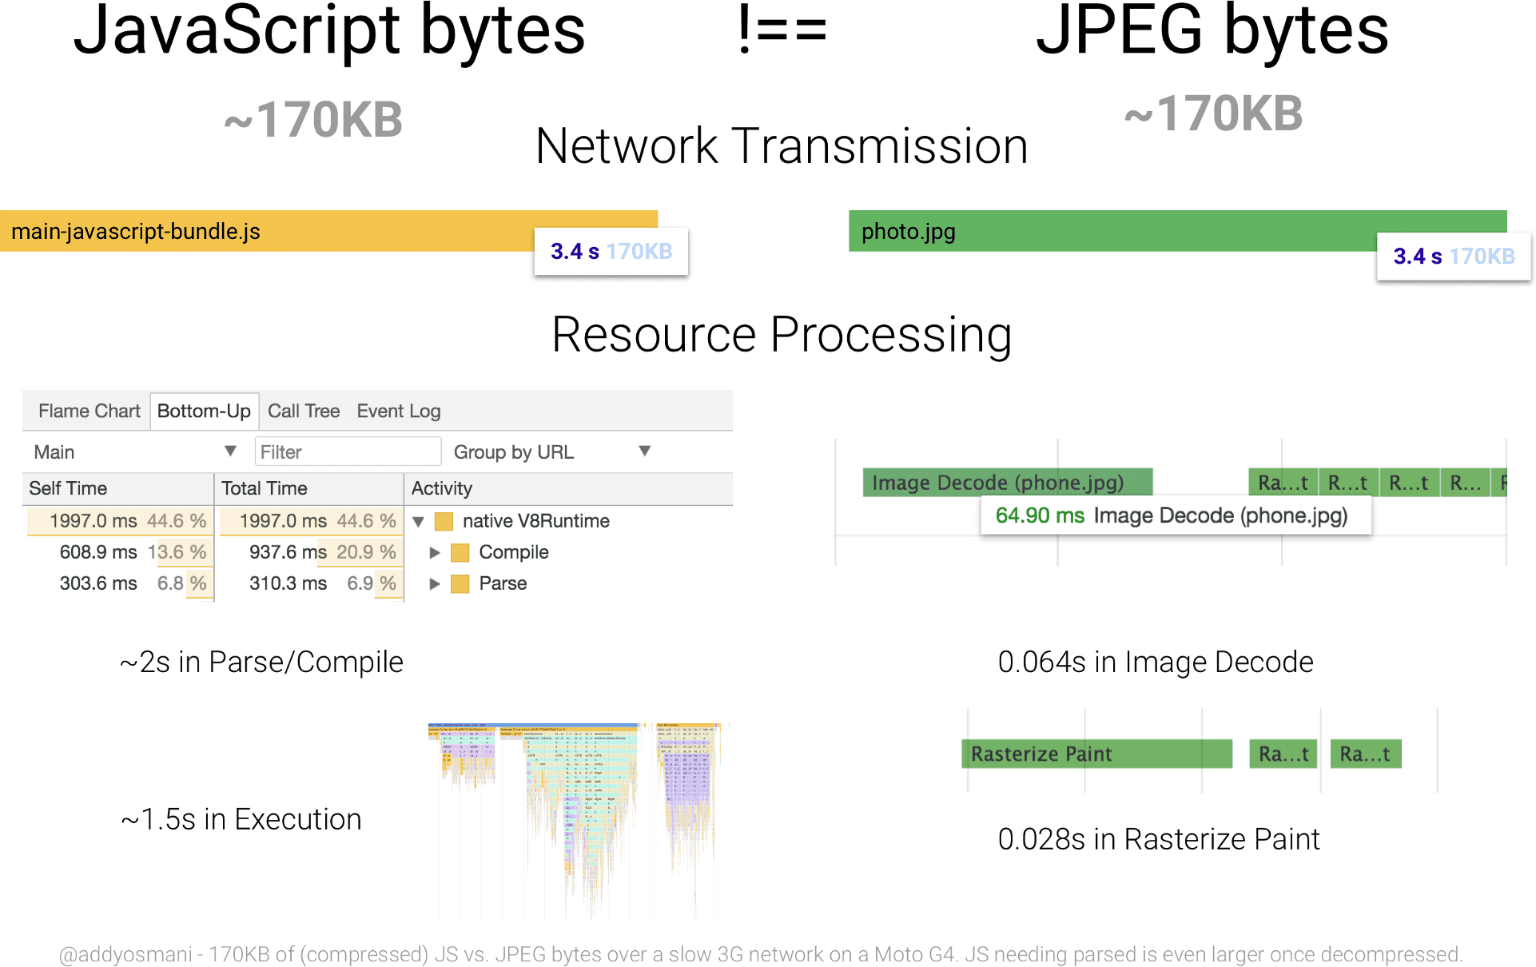 Diagram porównujący czas przetwarzania 170 KB JavaScriptu z czasem przetwarzania obrazu JPEG o porównywalnym rozmiarze. Zasób JavaScriptu zajmuje dużo więcej bajtów niż JPEG niż plik JPEG.